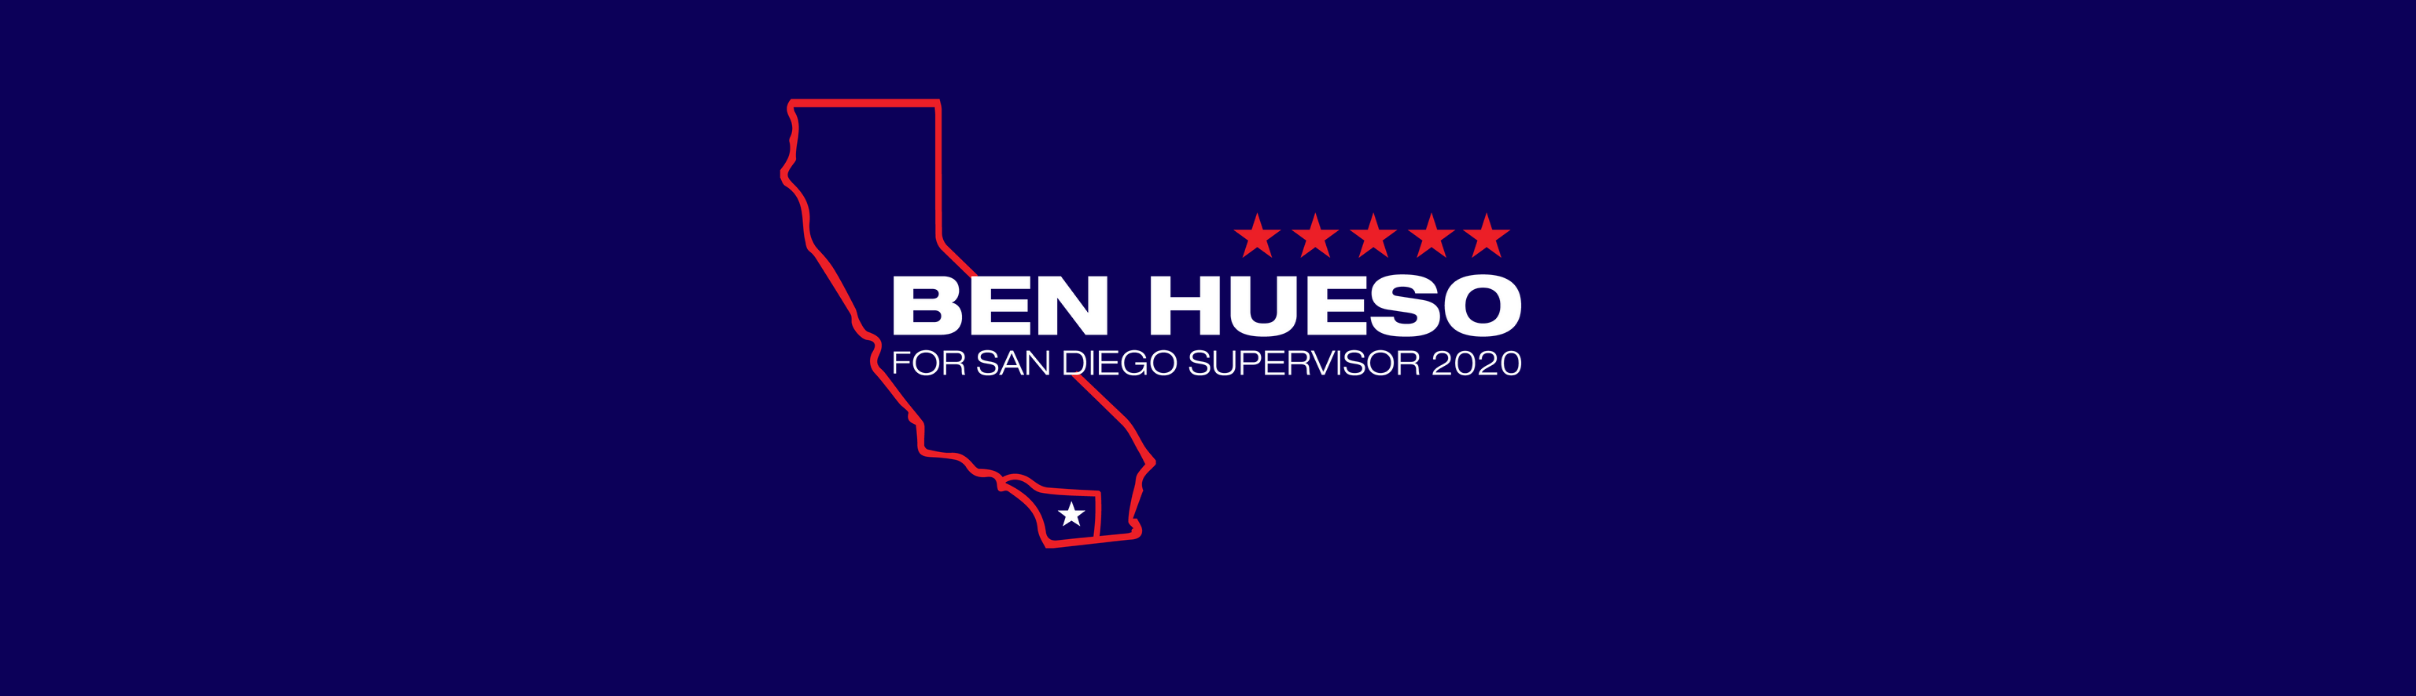 Ben Hueso for Supervisor 2020